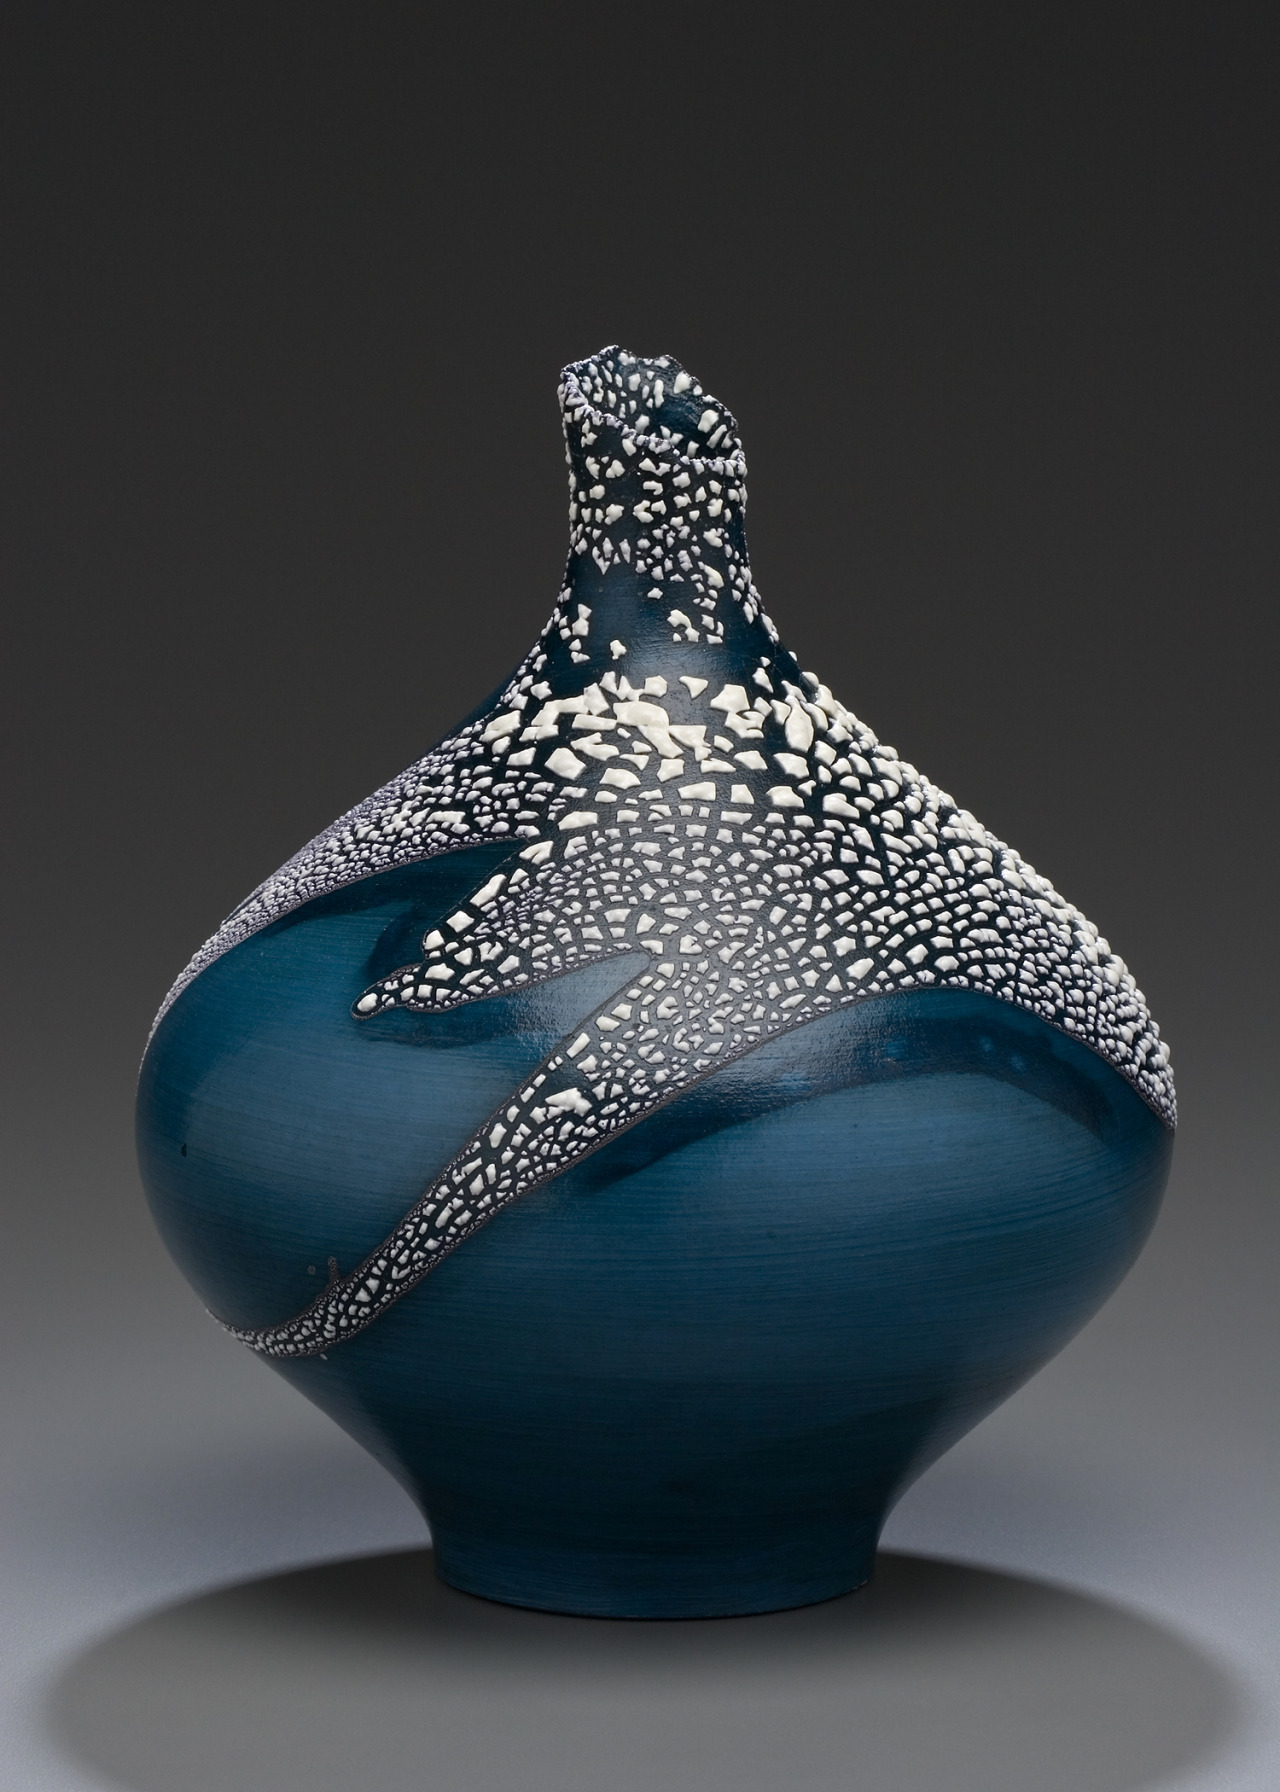 Contemporary ceramics of British Columbia Ceramics Now